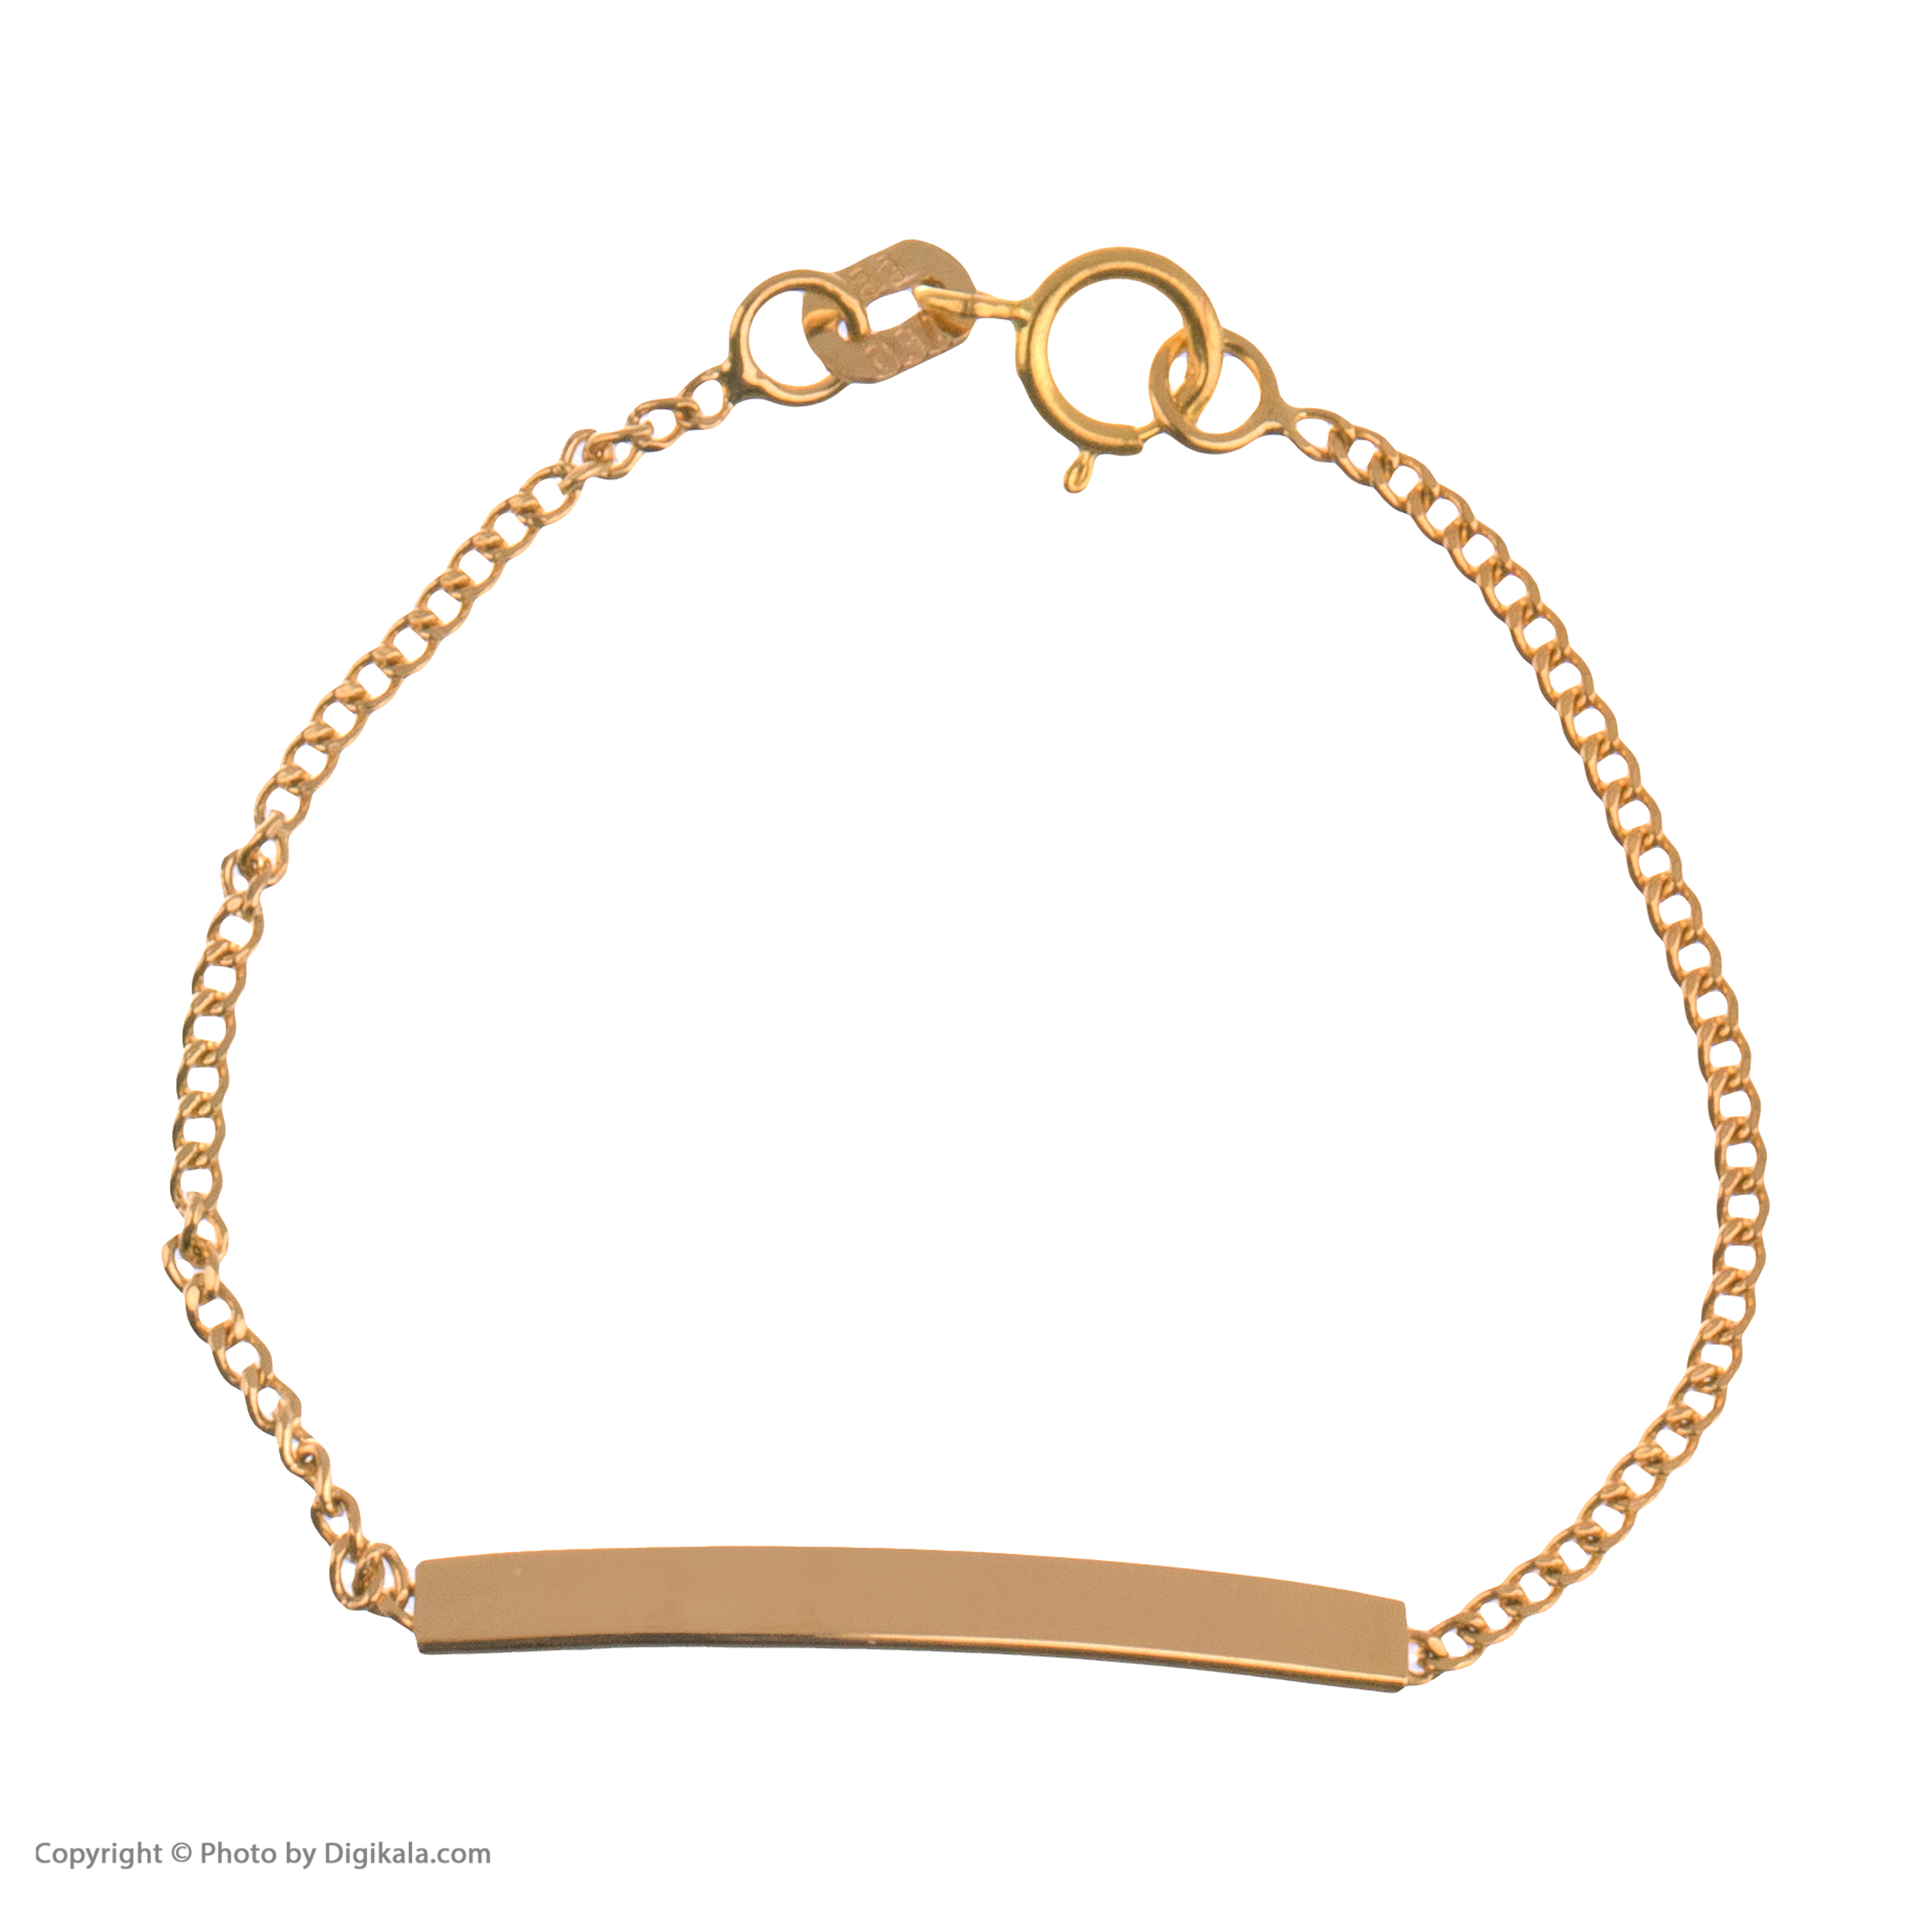 دستبند طلا 18 عیار دخترانه مایا ماهک مدل MB1050 طرح کارتیه -  - 2